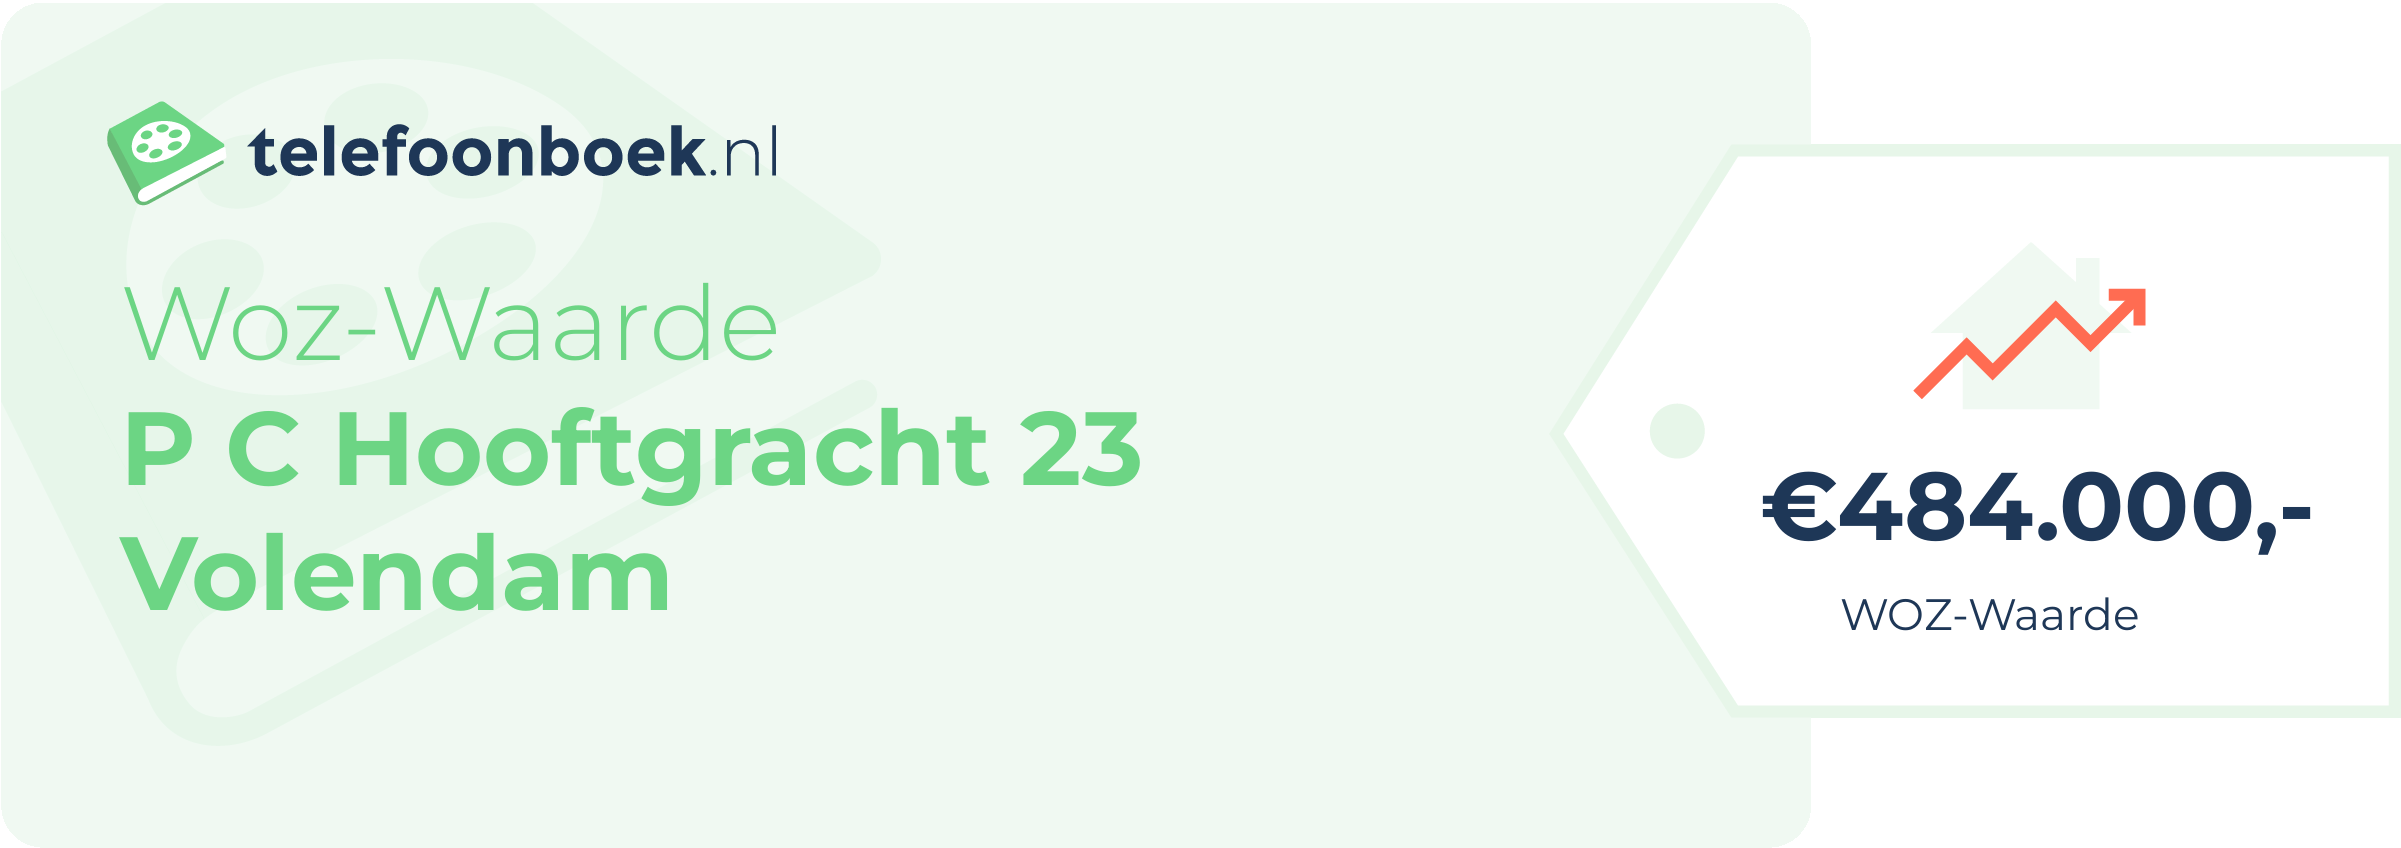 WOZ-waarde P C Hooftgracht 23 Volendam